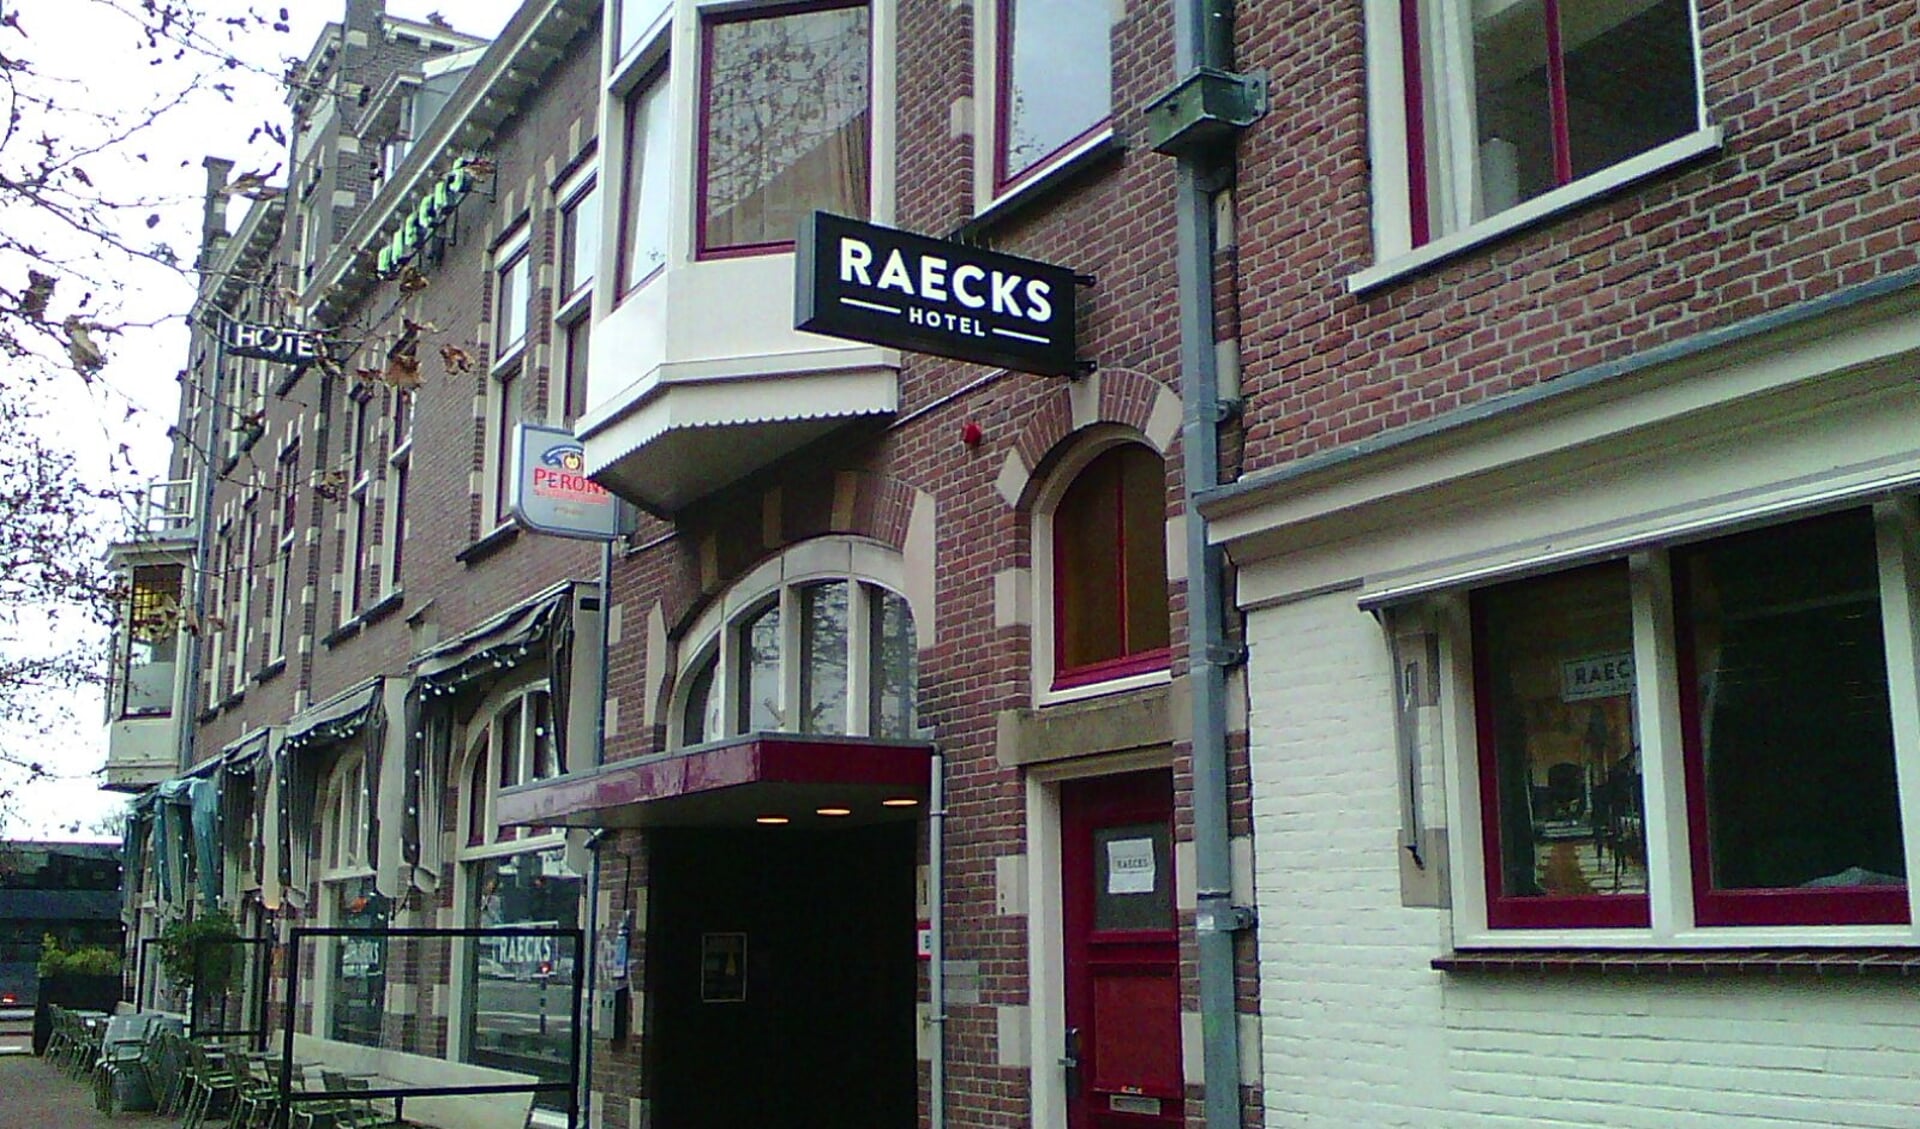 De horeca van De Raecks sluit een week.